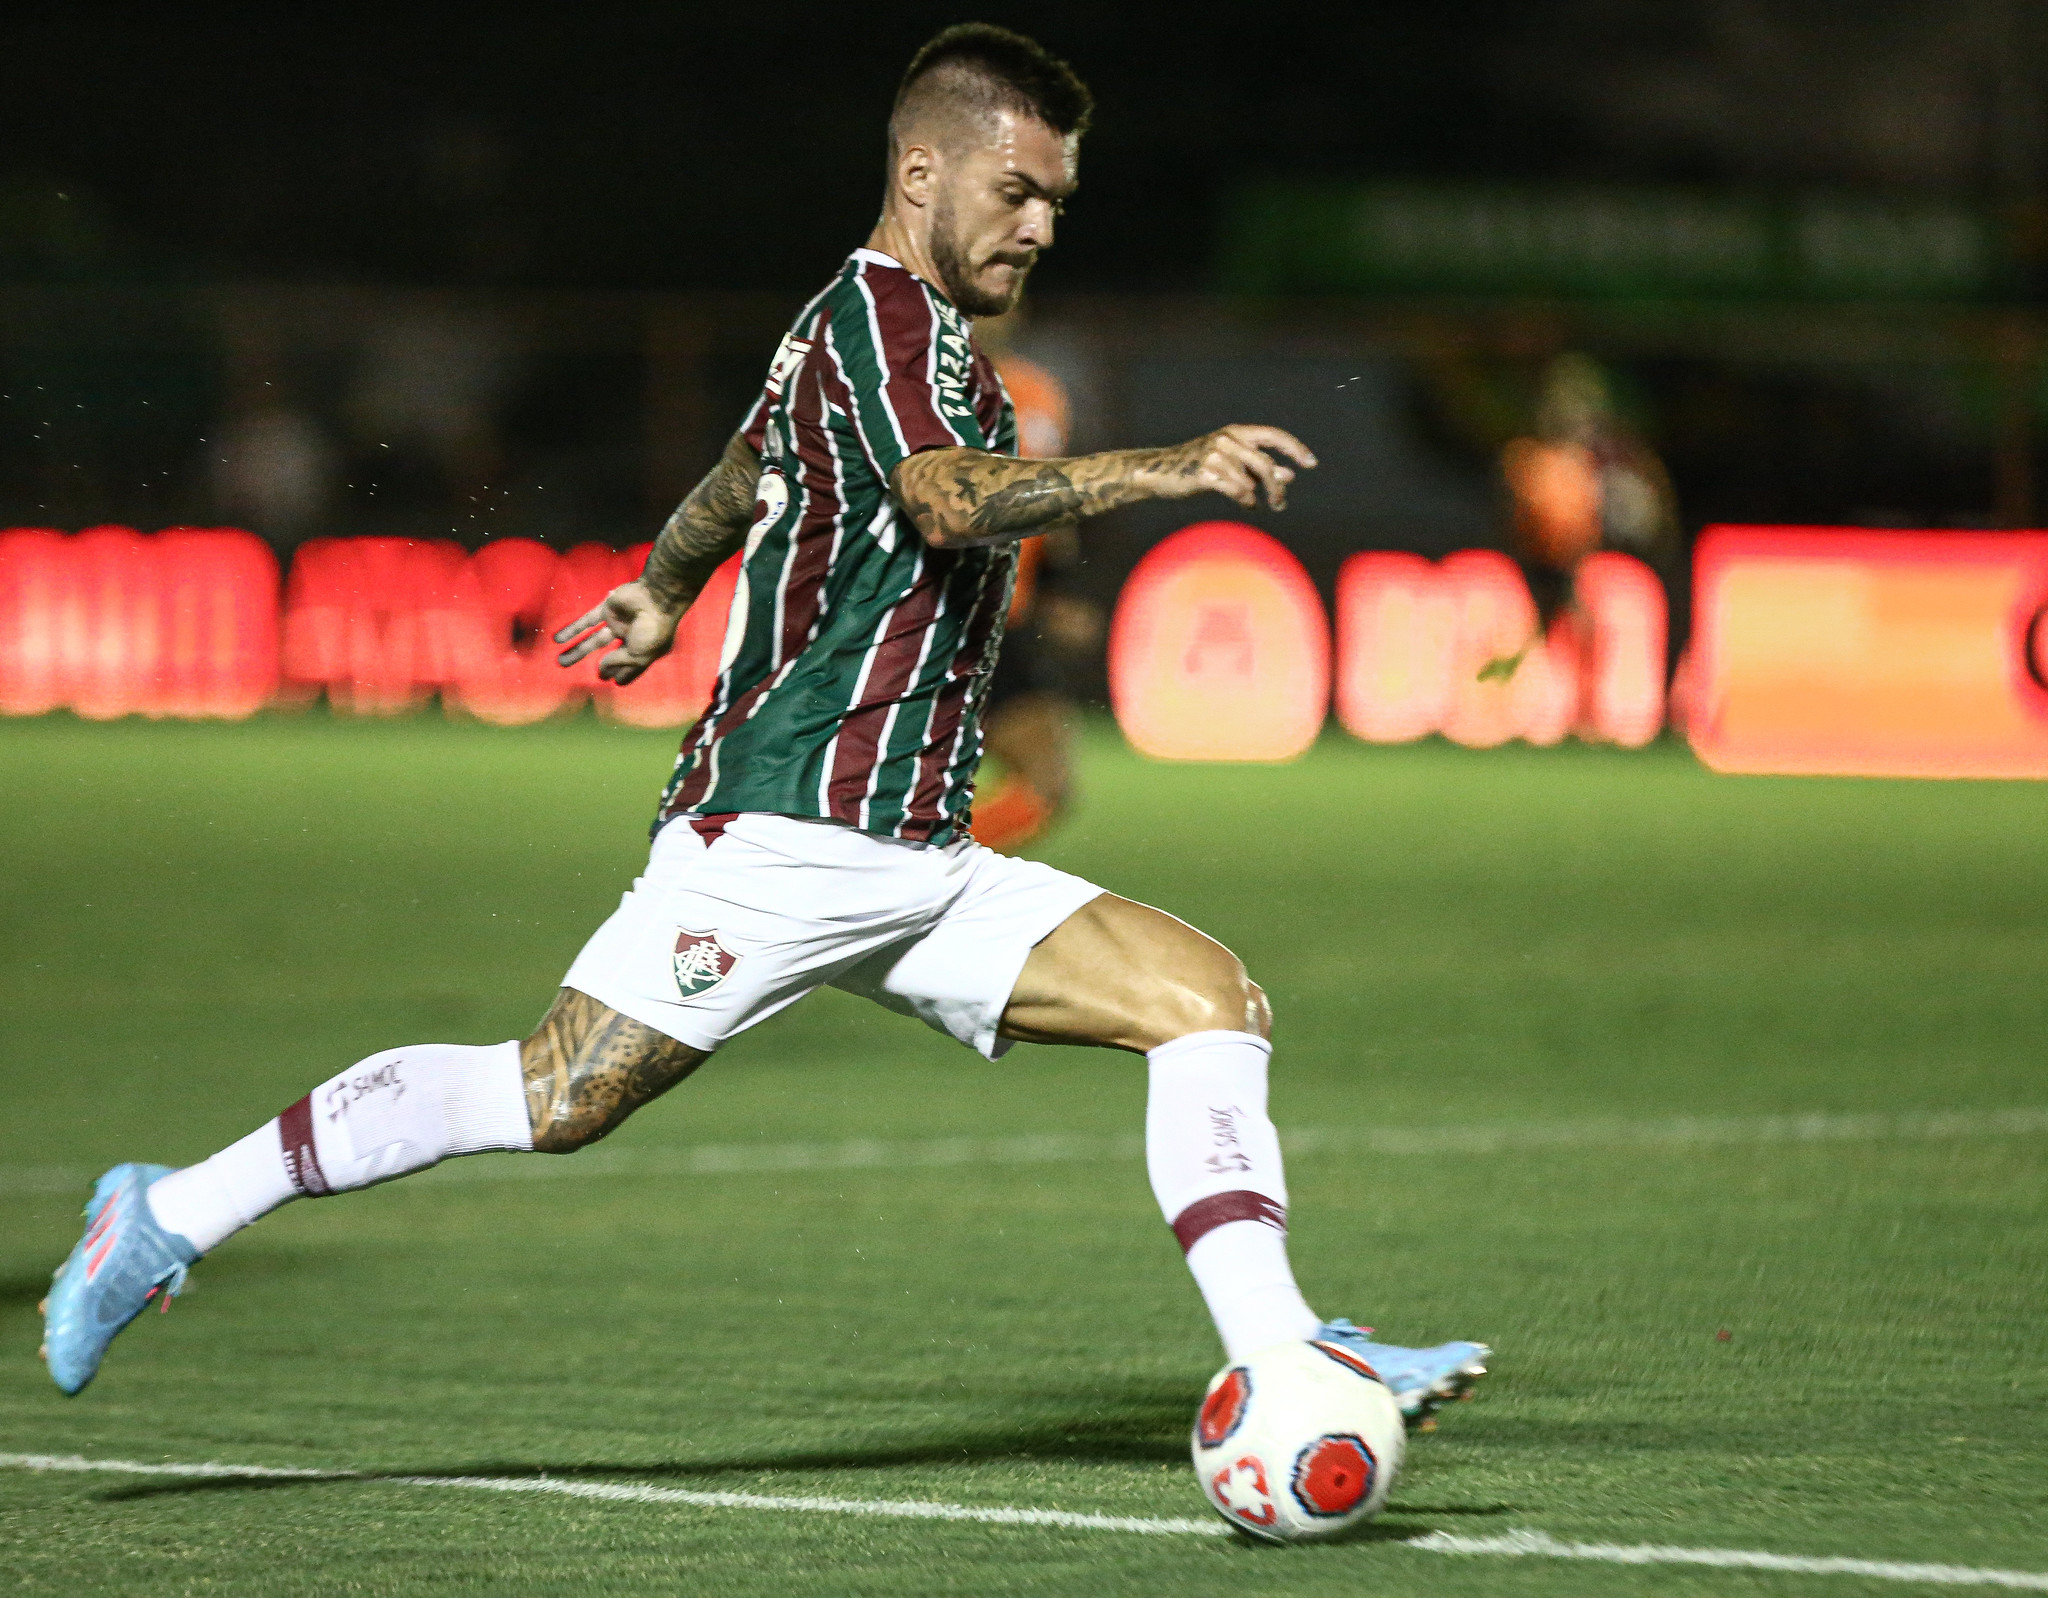 Nathan vem tendo dificuldades em seu início no Fluminense